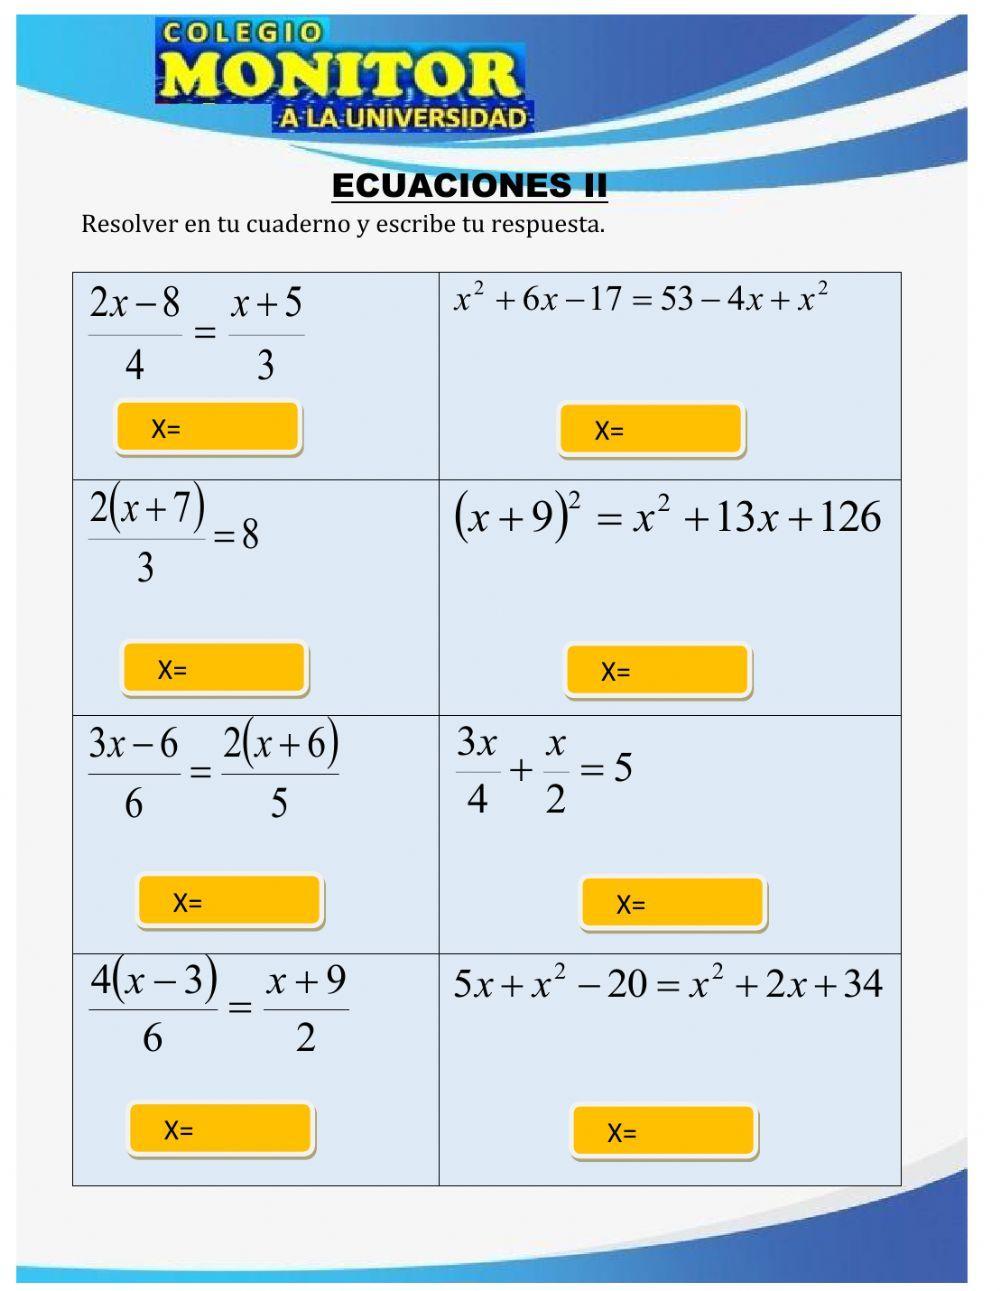 Ecuaciones ii